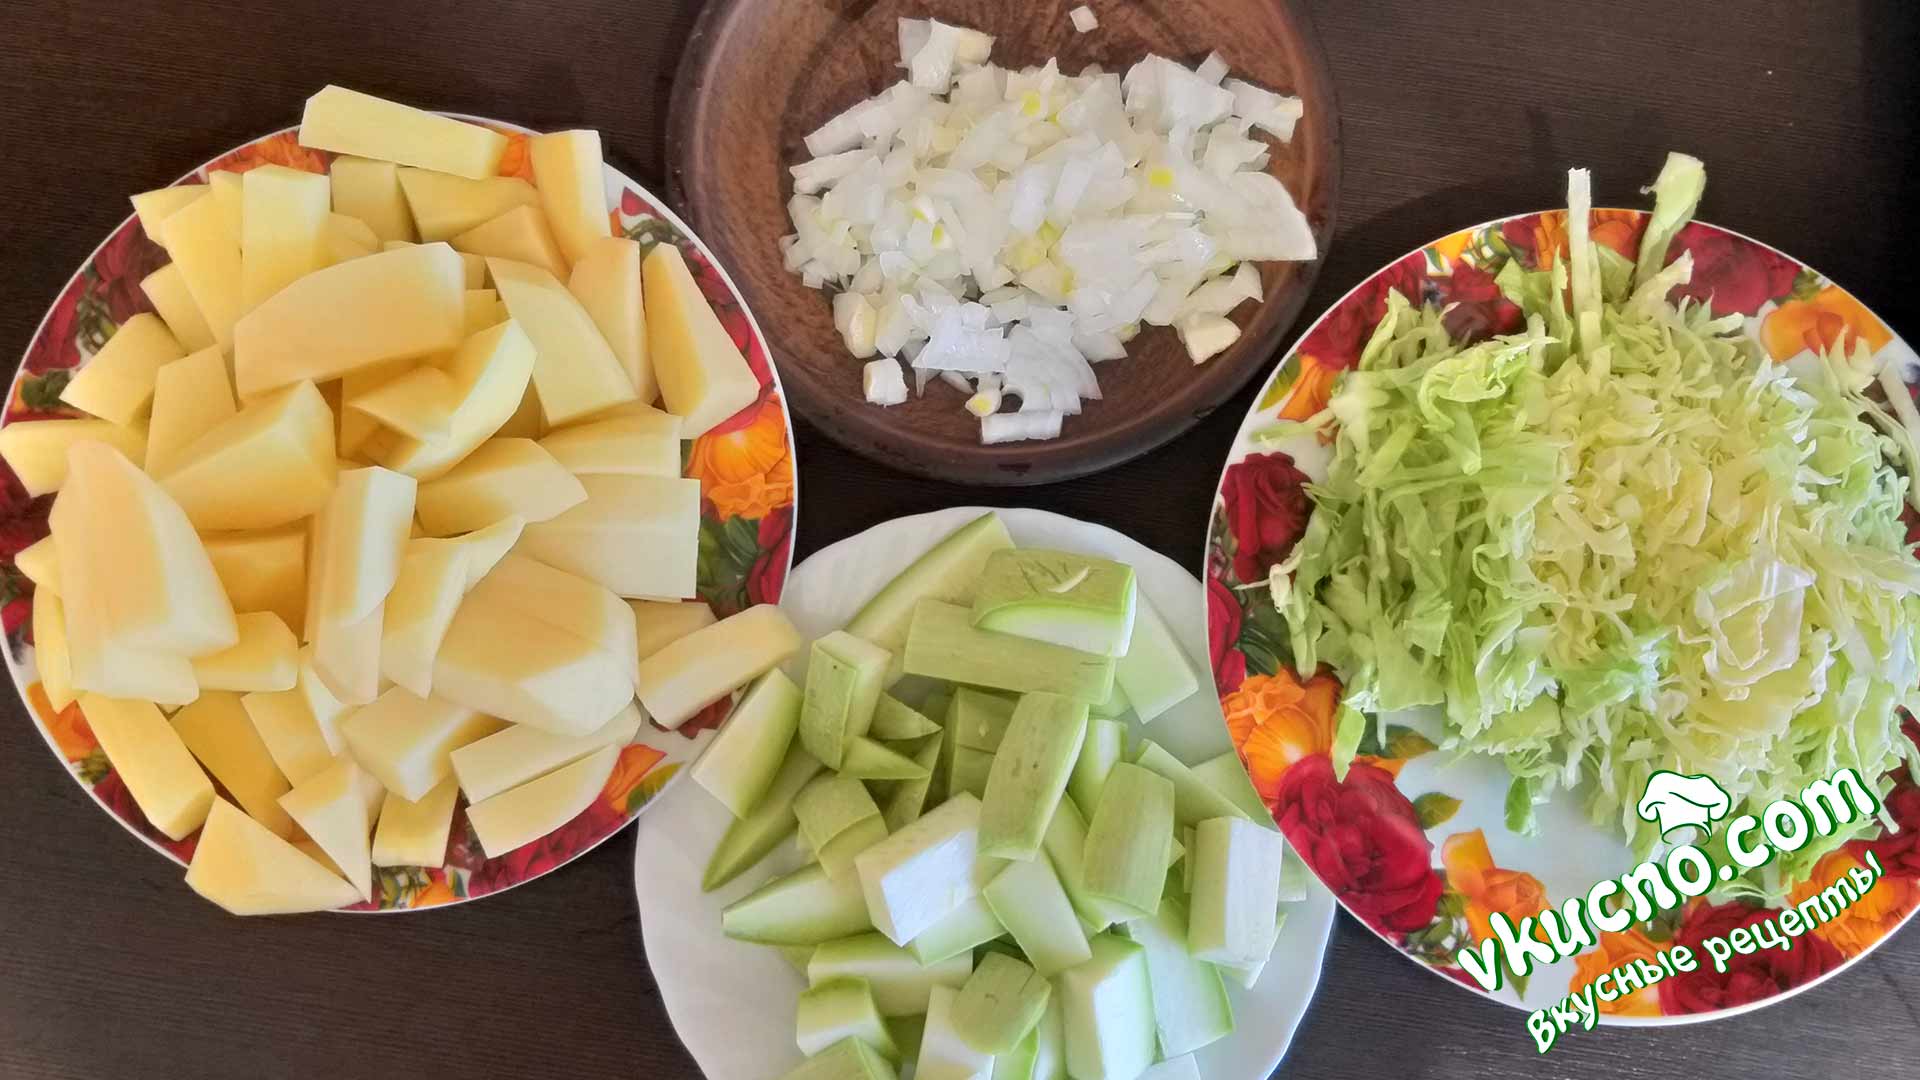 Овощное рагу с кабачками, картошкой и мясом